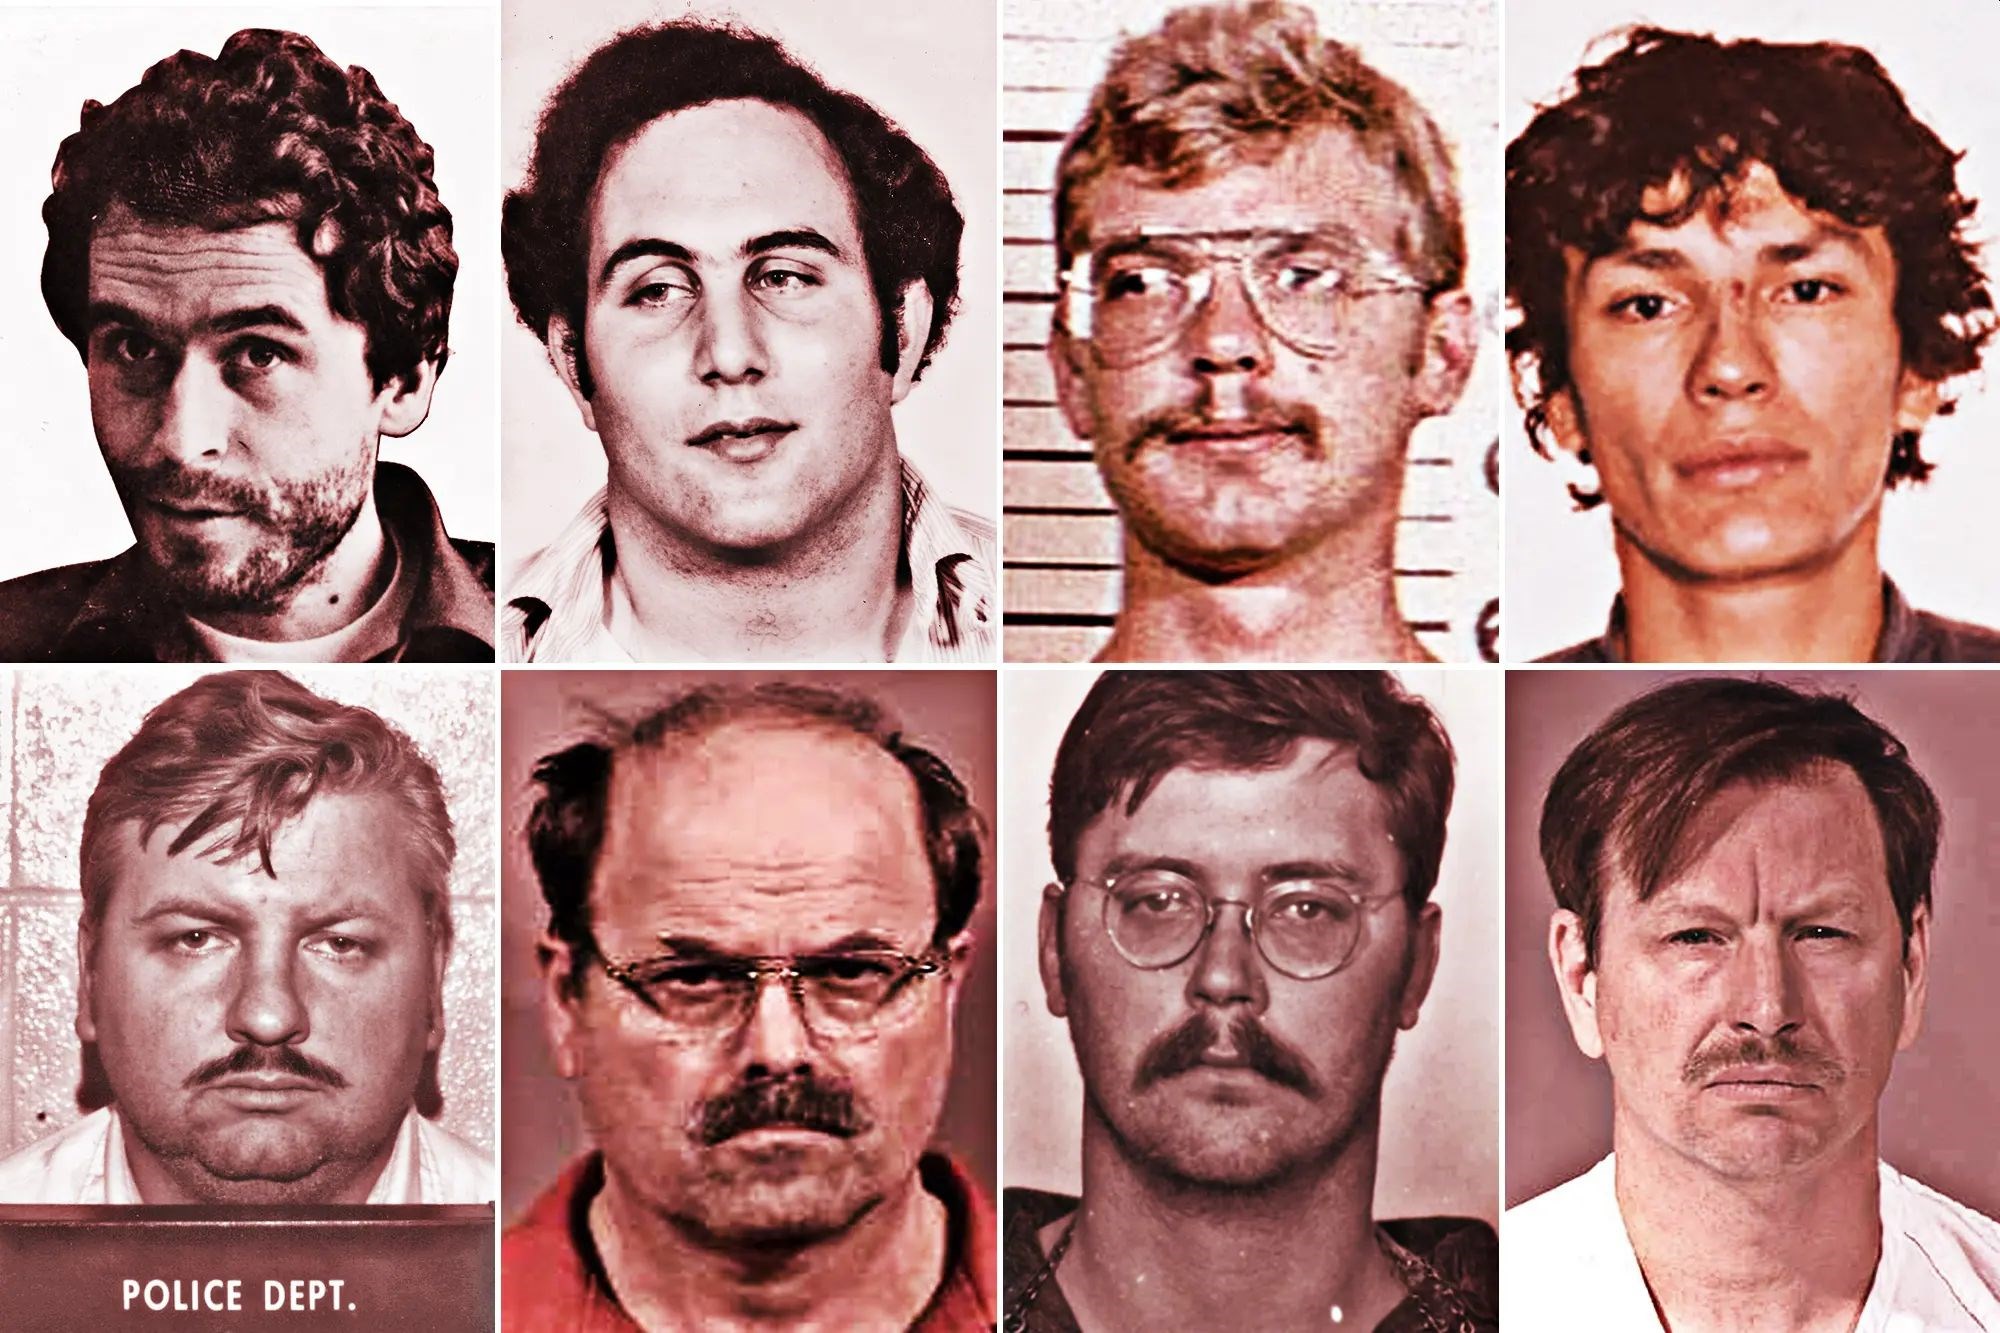 Seri katil sayısı 1980'den sonra düştü: Peki sebebi ne?